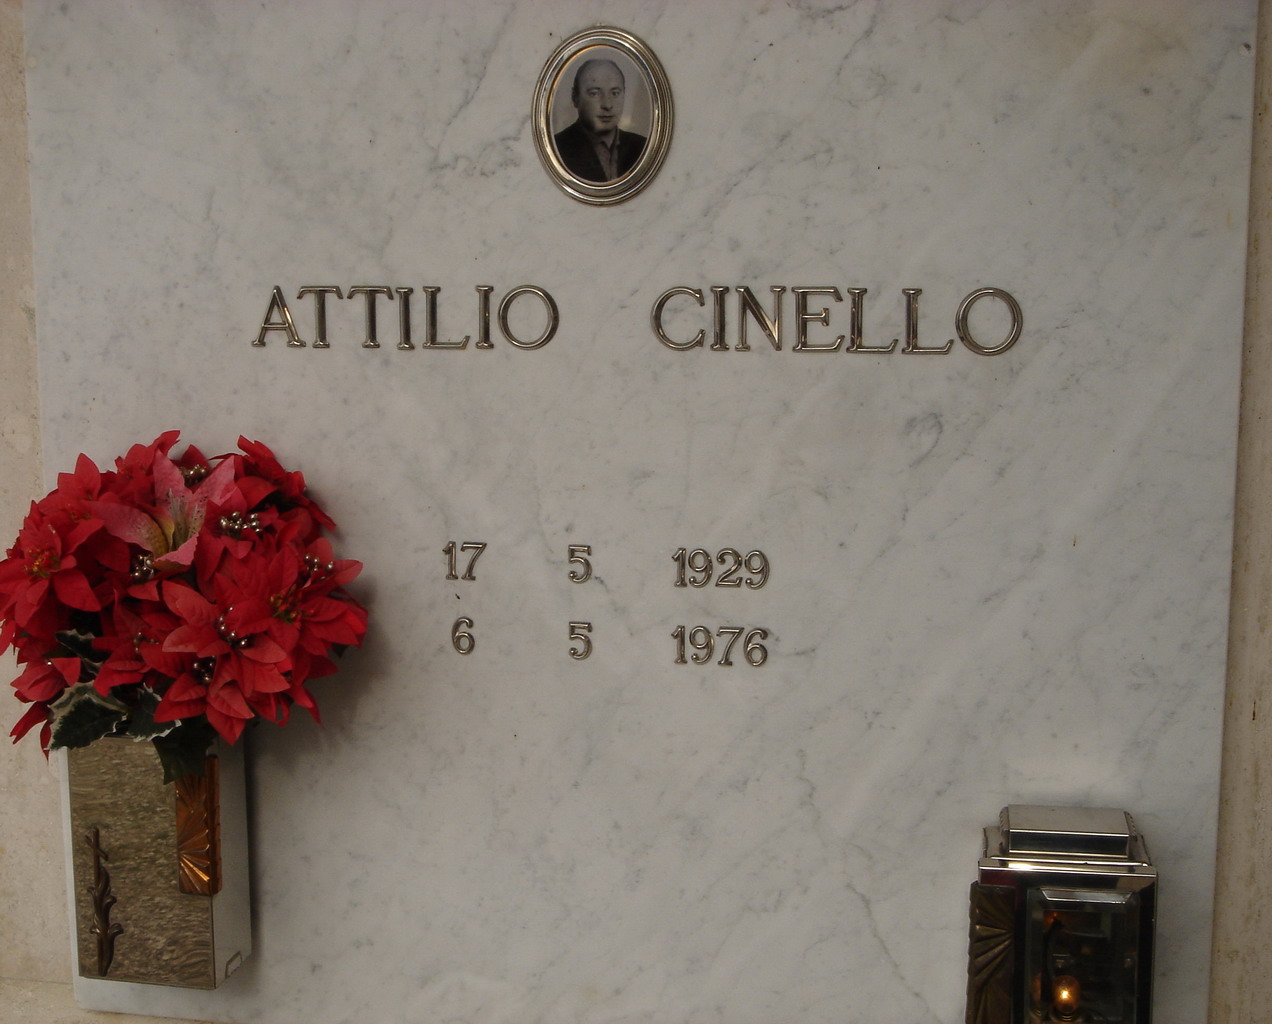 Cinello Attilio